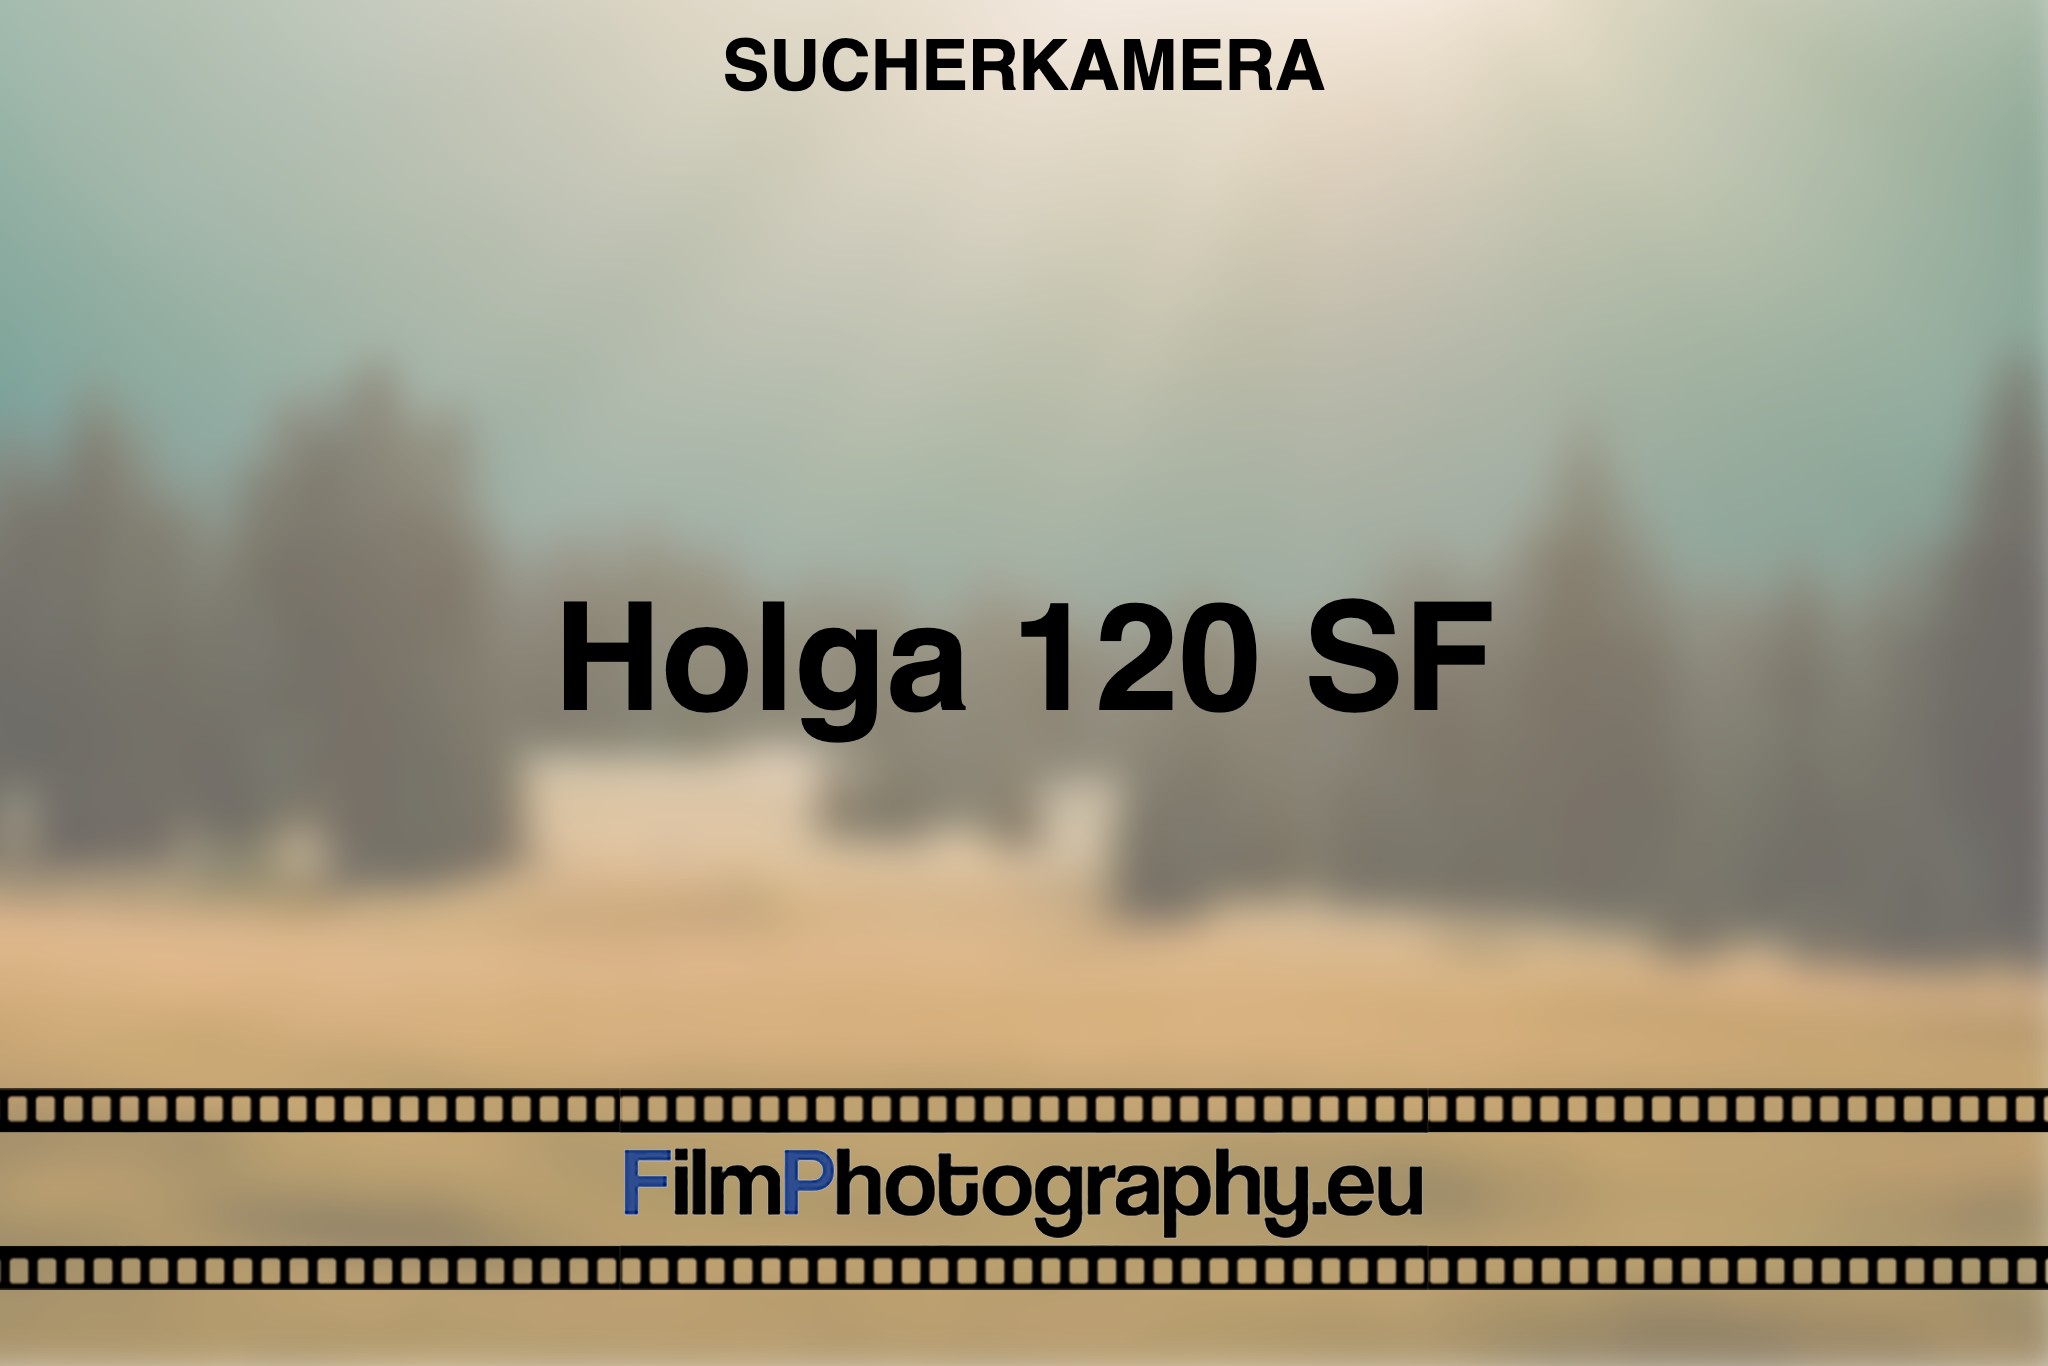 holga-120-sf-sucherkamera-bnv